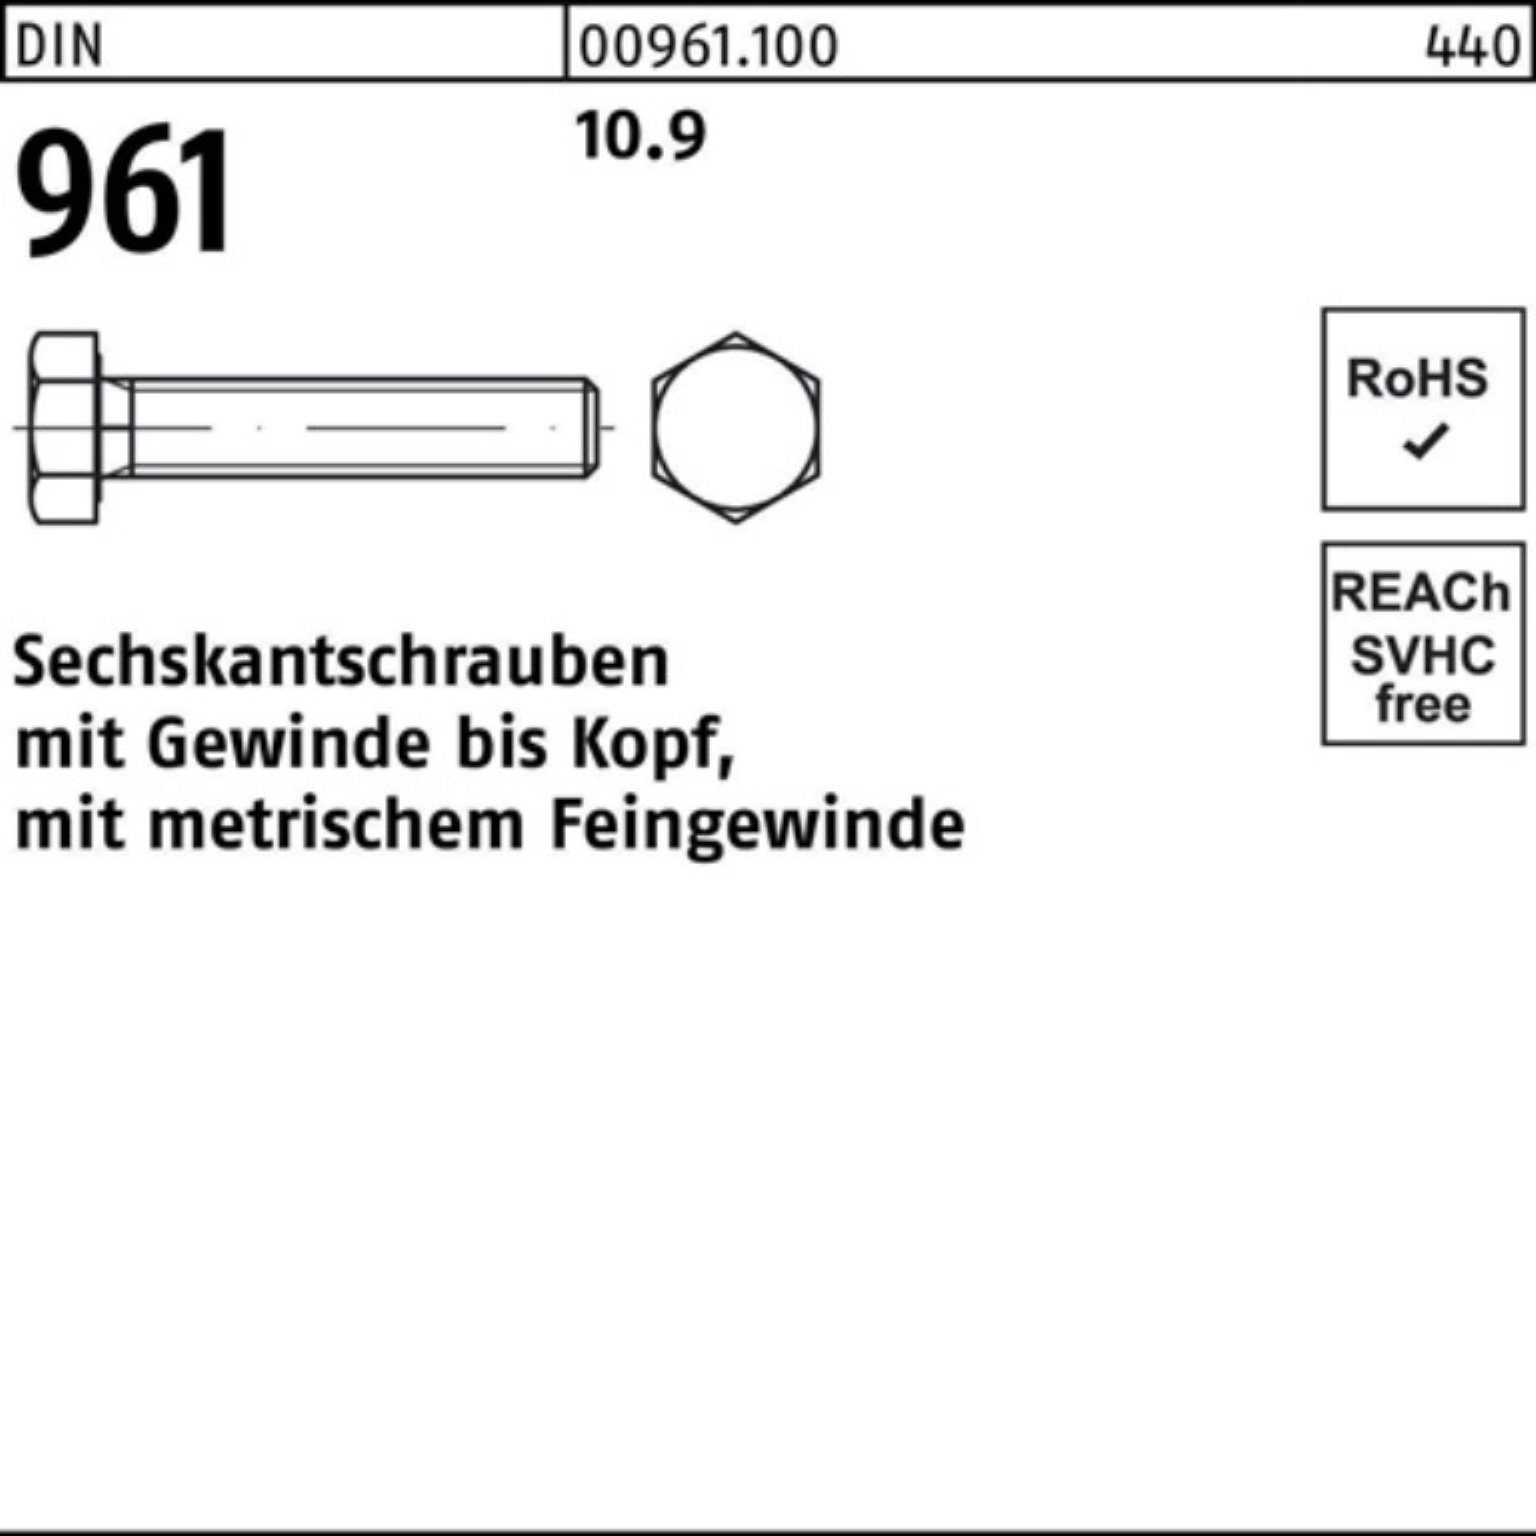 Reyher Sechskantschraube 961 Sechskantschraube 100er Stück Pack M12x1,5x110 50 DIN DIN VG 10.9